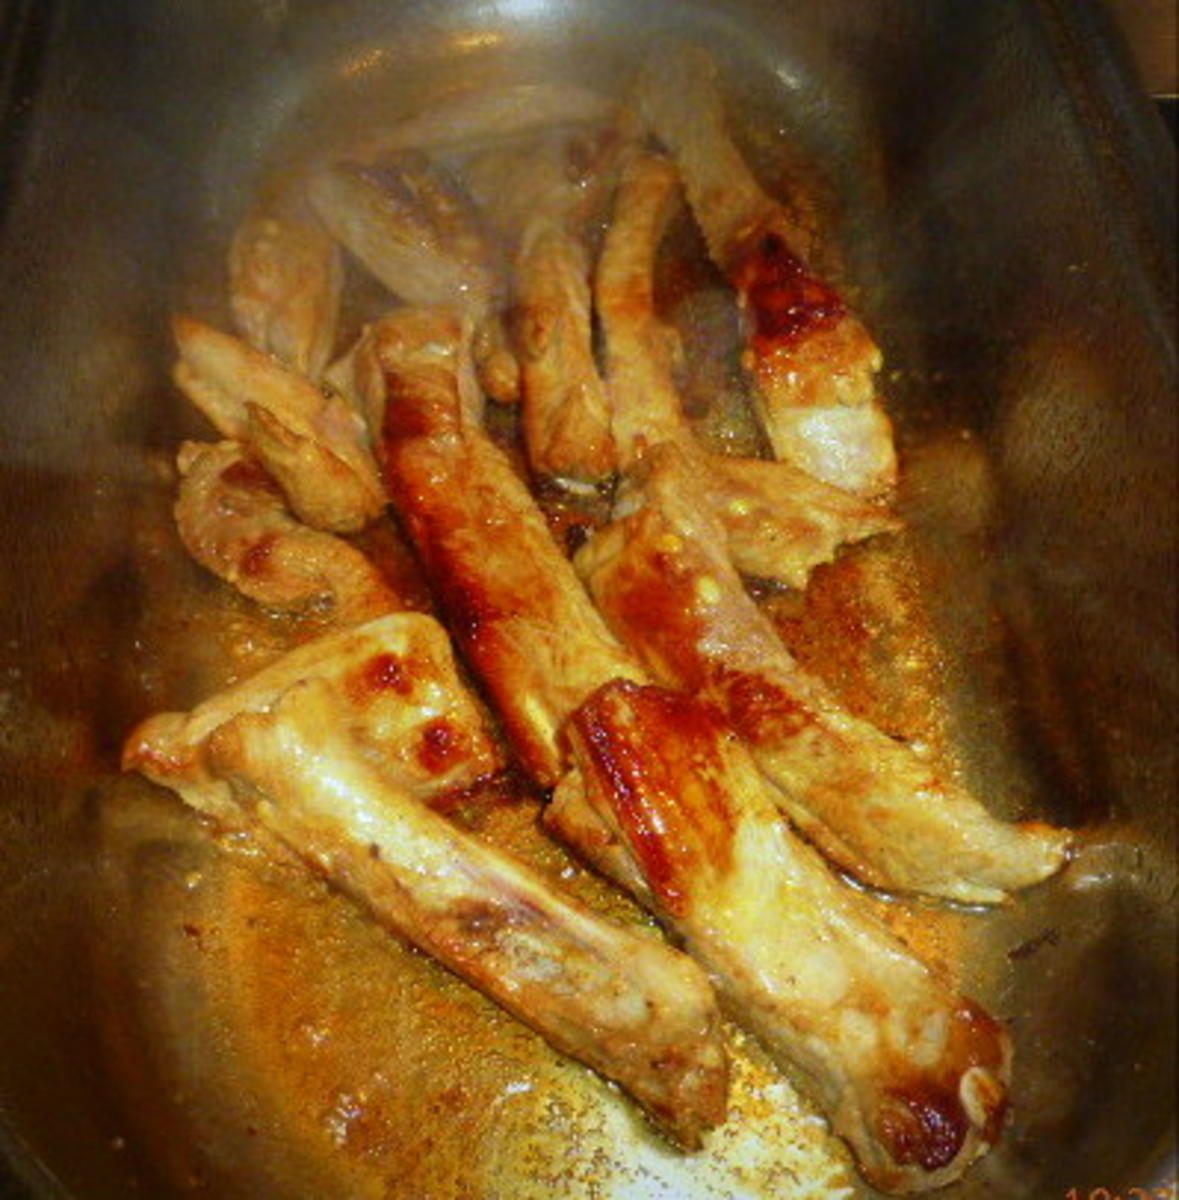 Karreebraten vom Duroc-Schwein mit Rote-Bete-Sauce - Rezept - Bild Nr. 7690